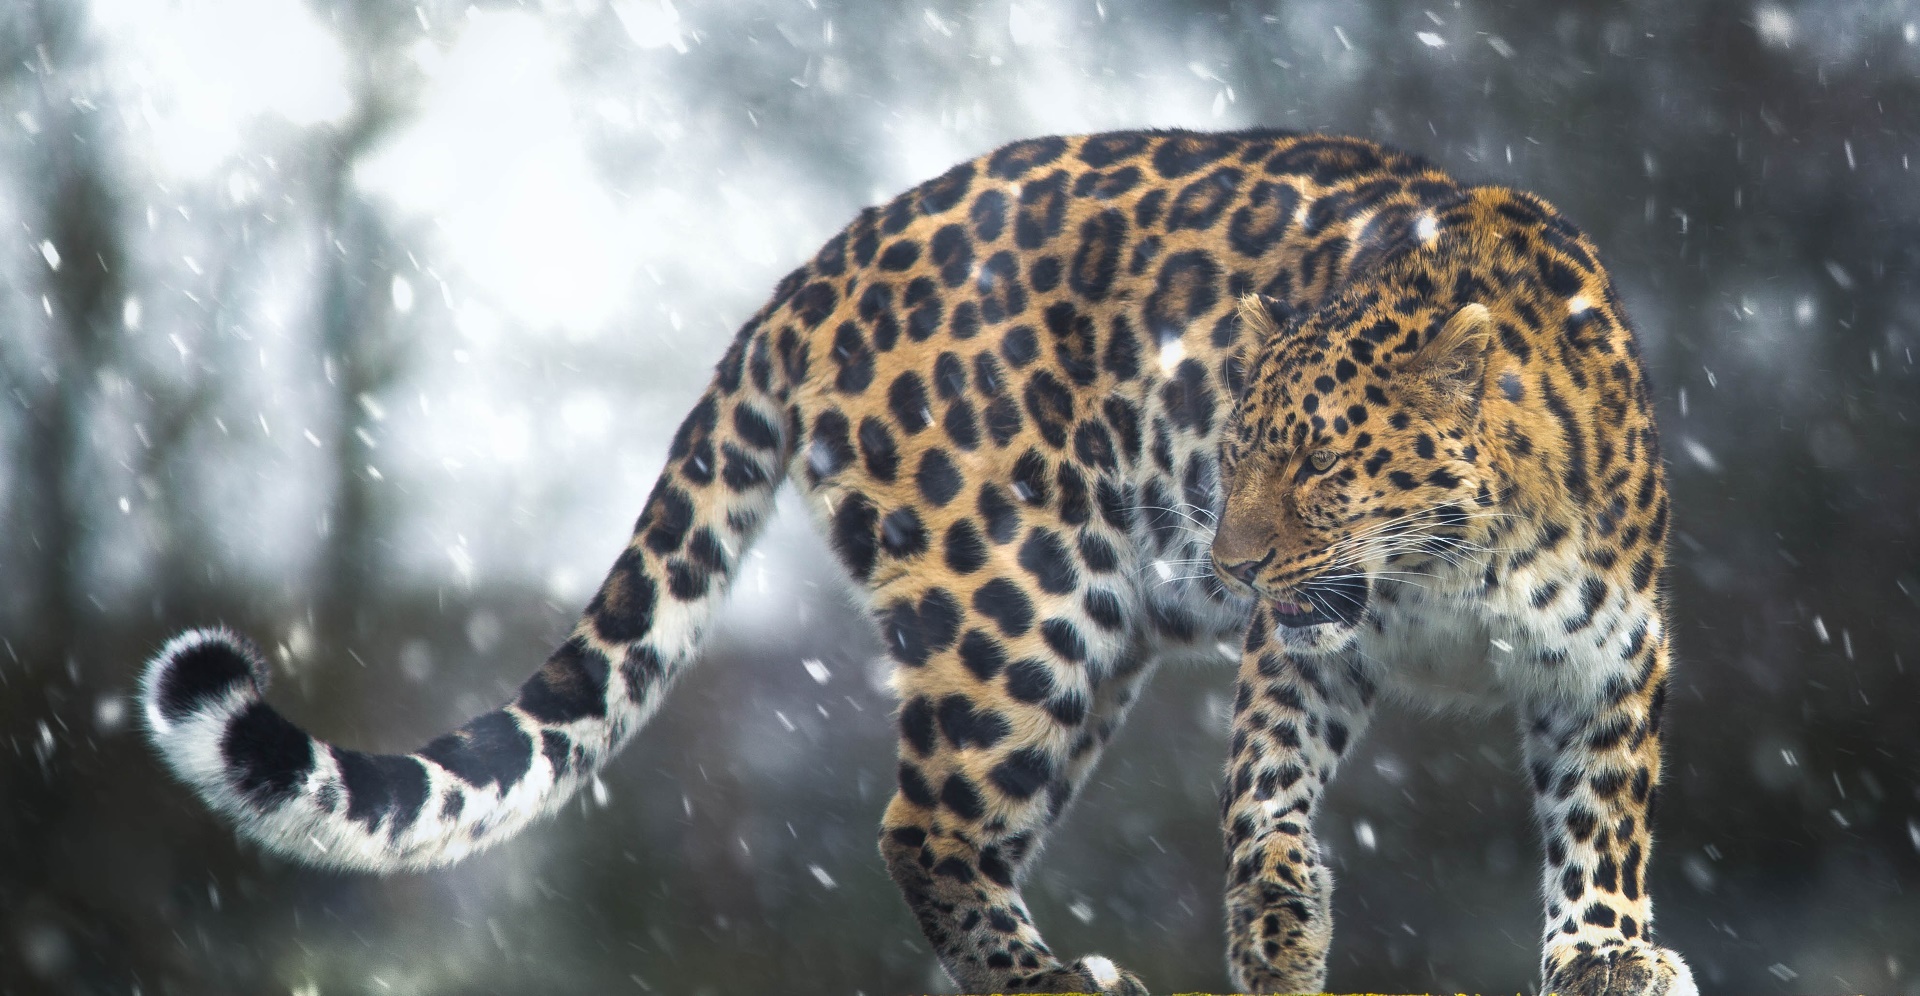 General 1920x996 leopard big cats animals mammals cats feline snow outdoors winter